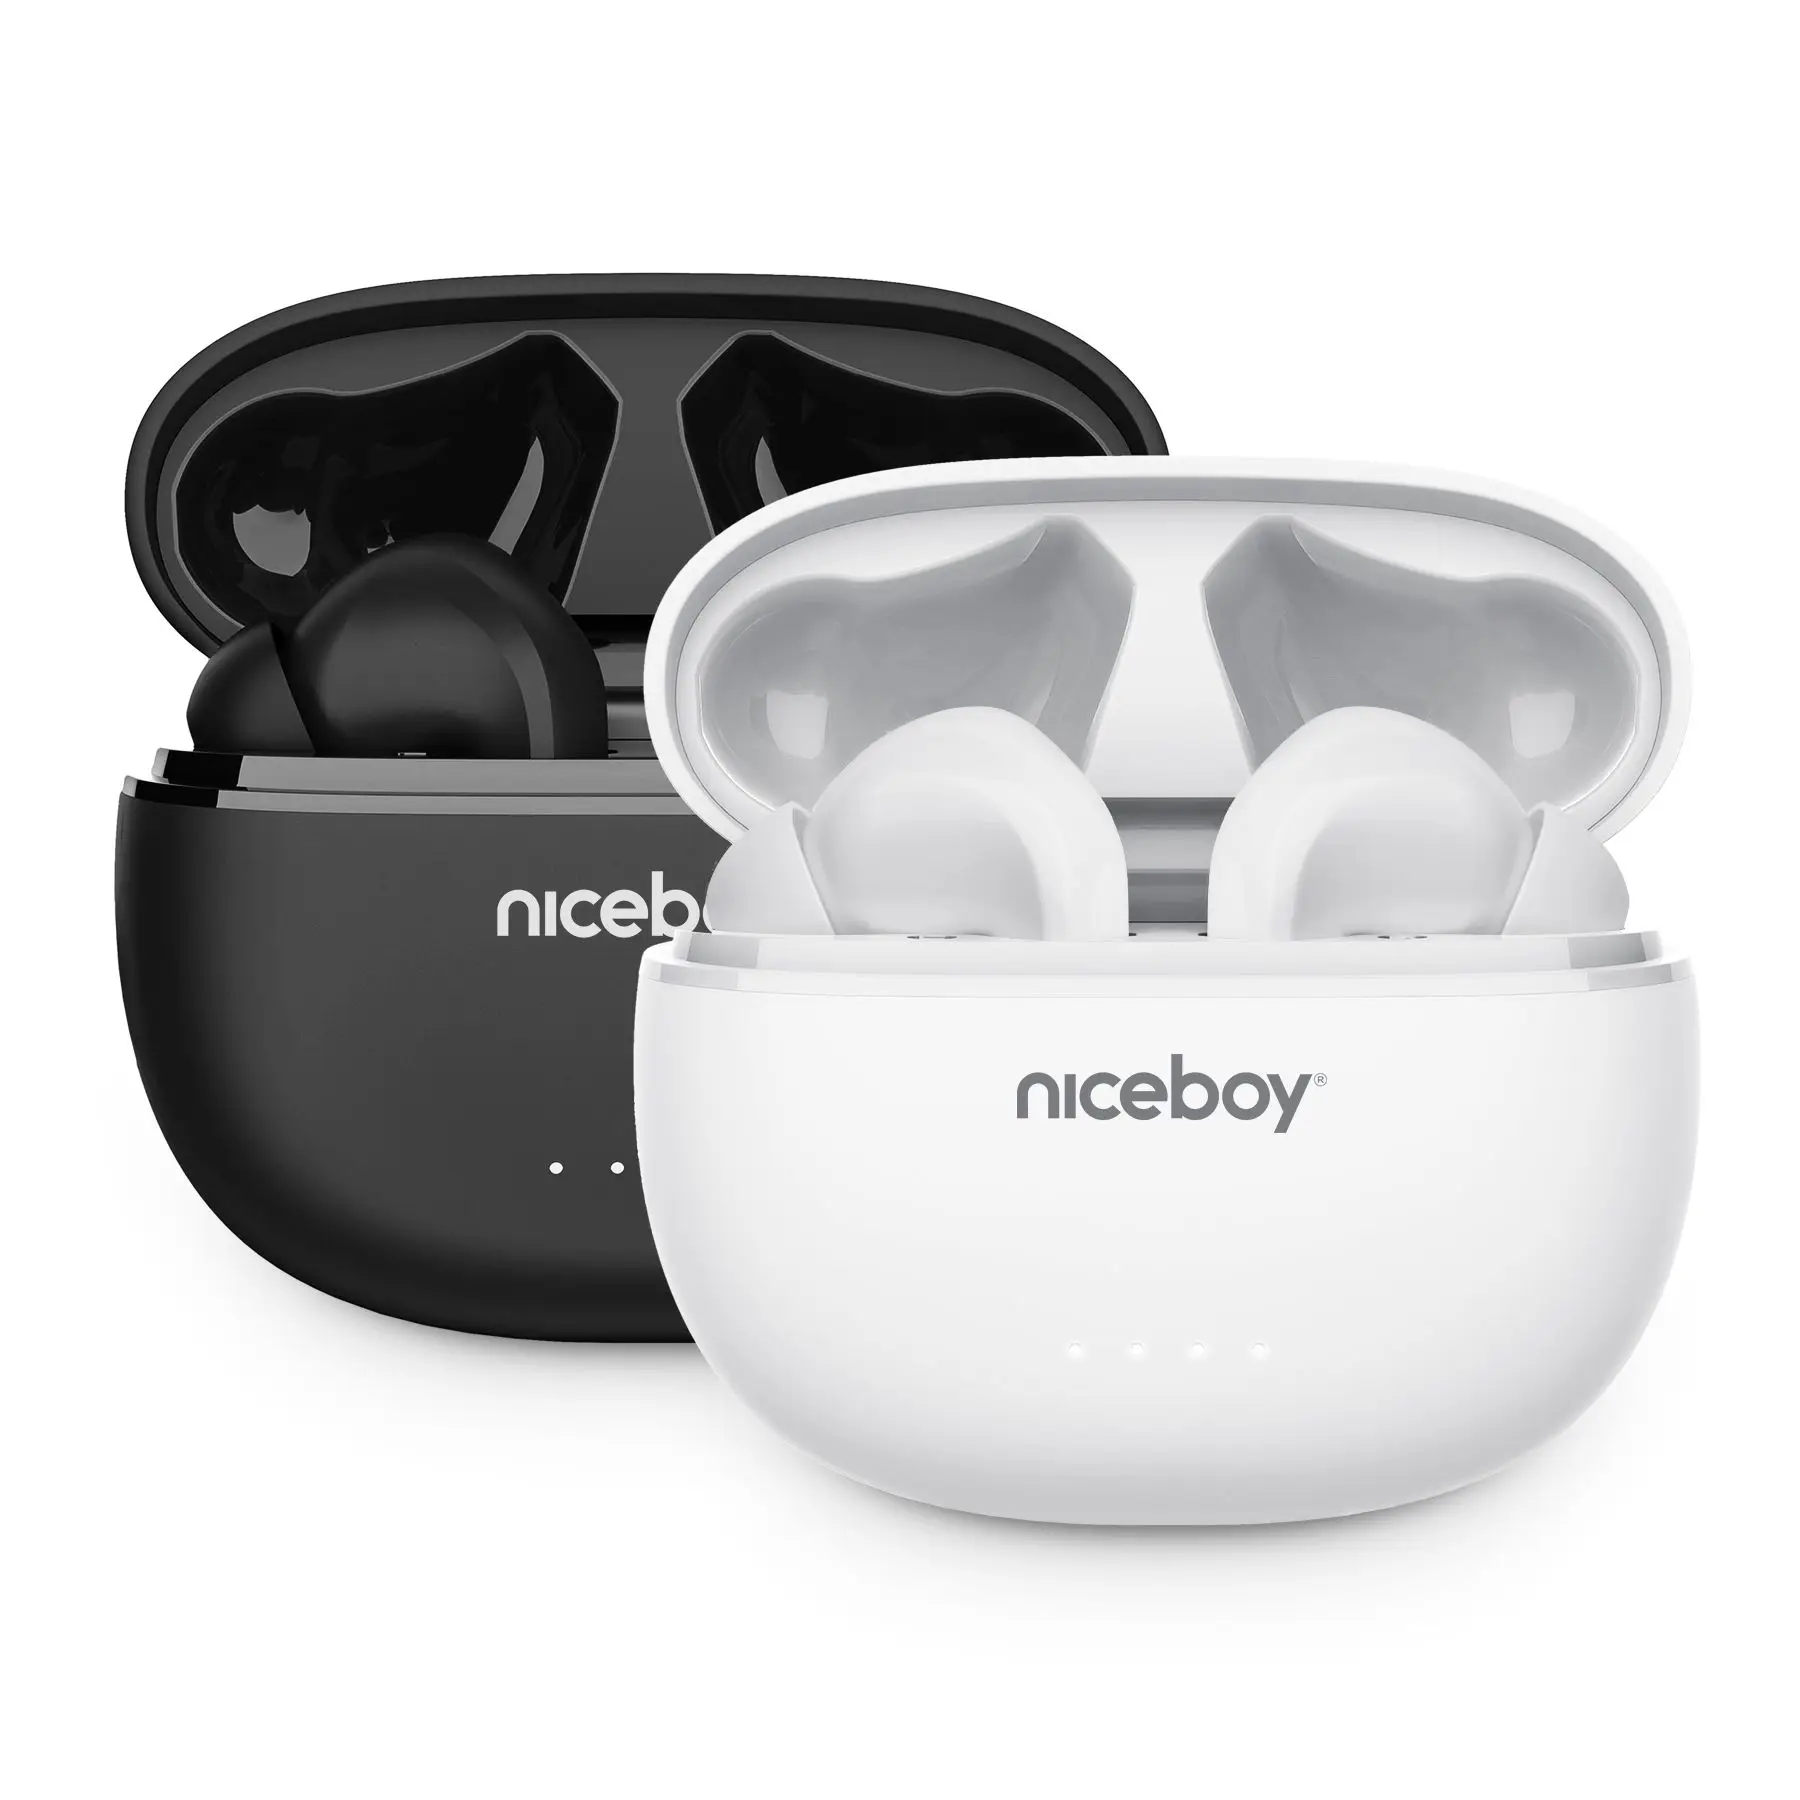  Bluetooth fejhallgató niceboy hive pins 3 anc kihangosító mikrofon app ion kiegyenlítő nagyszerű hangzás hosszú akkumulátor-élettartam töltési tok 